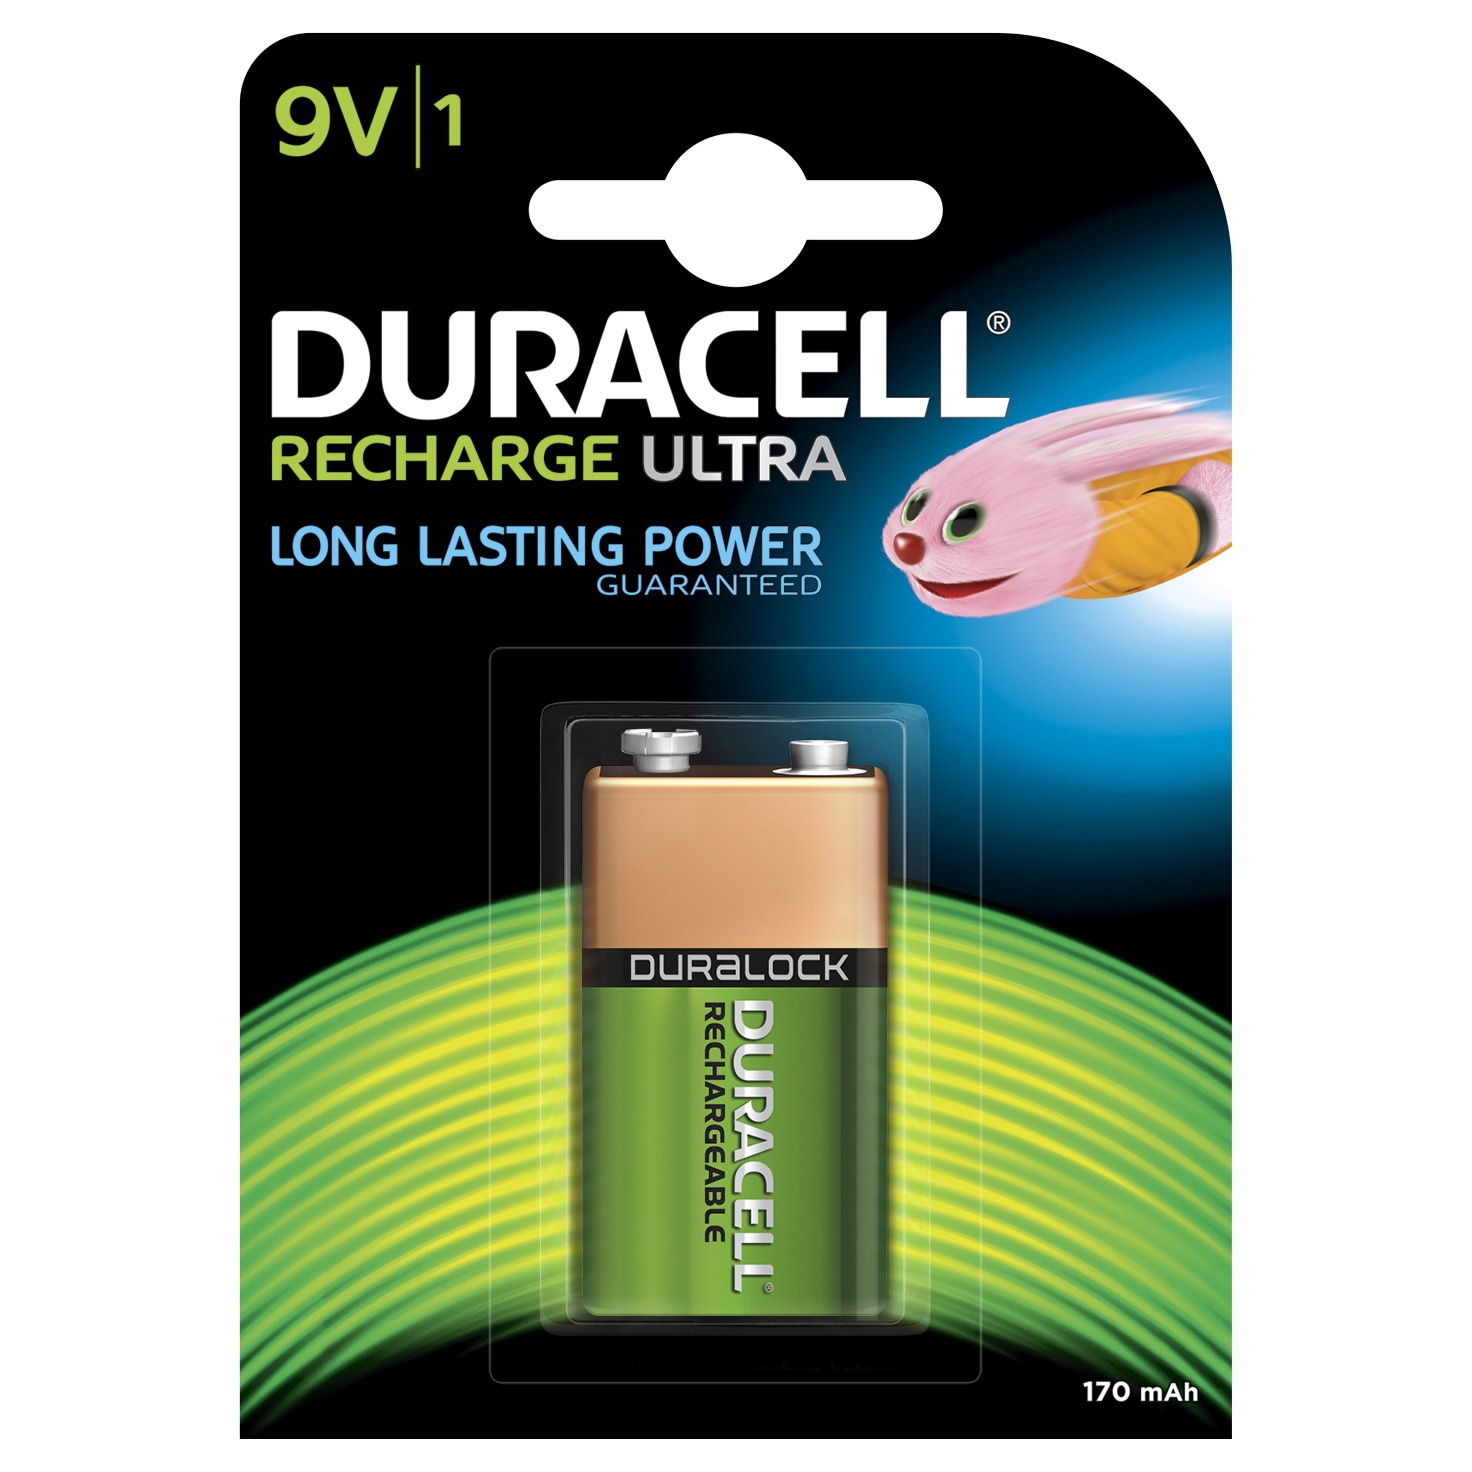 Duracell Recharge Plus 9V 170mAh batteri - 1 stk thumbnail